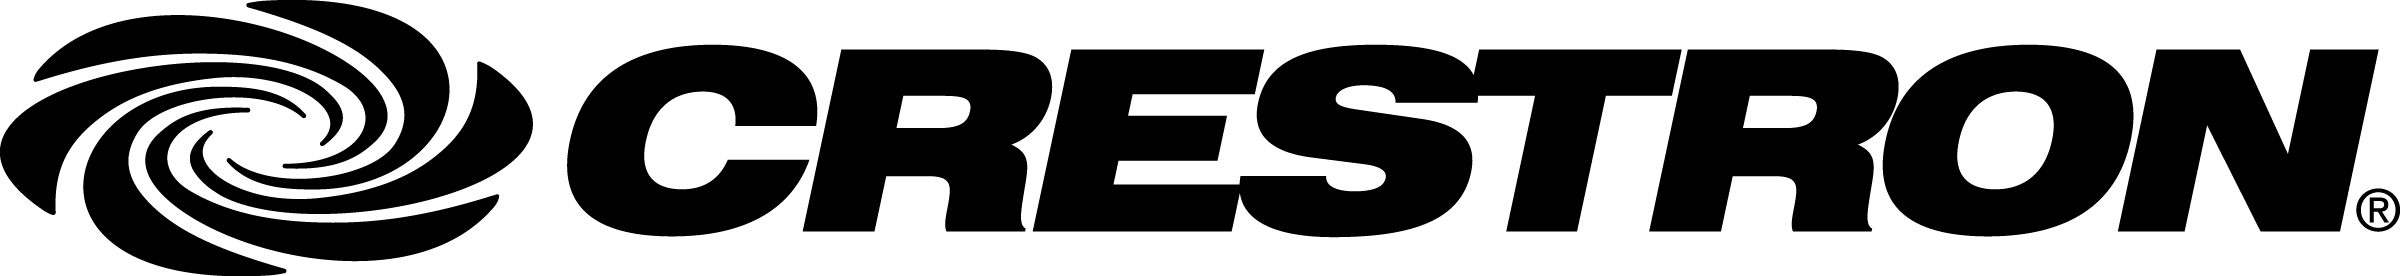 Crestron logo black.png